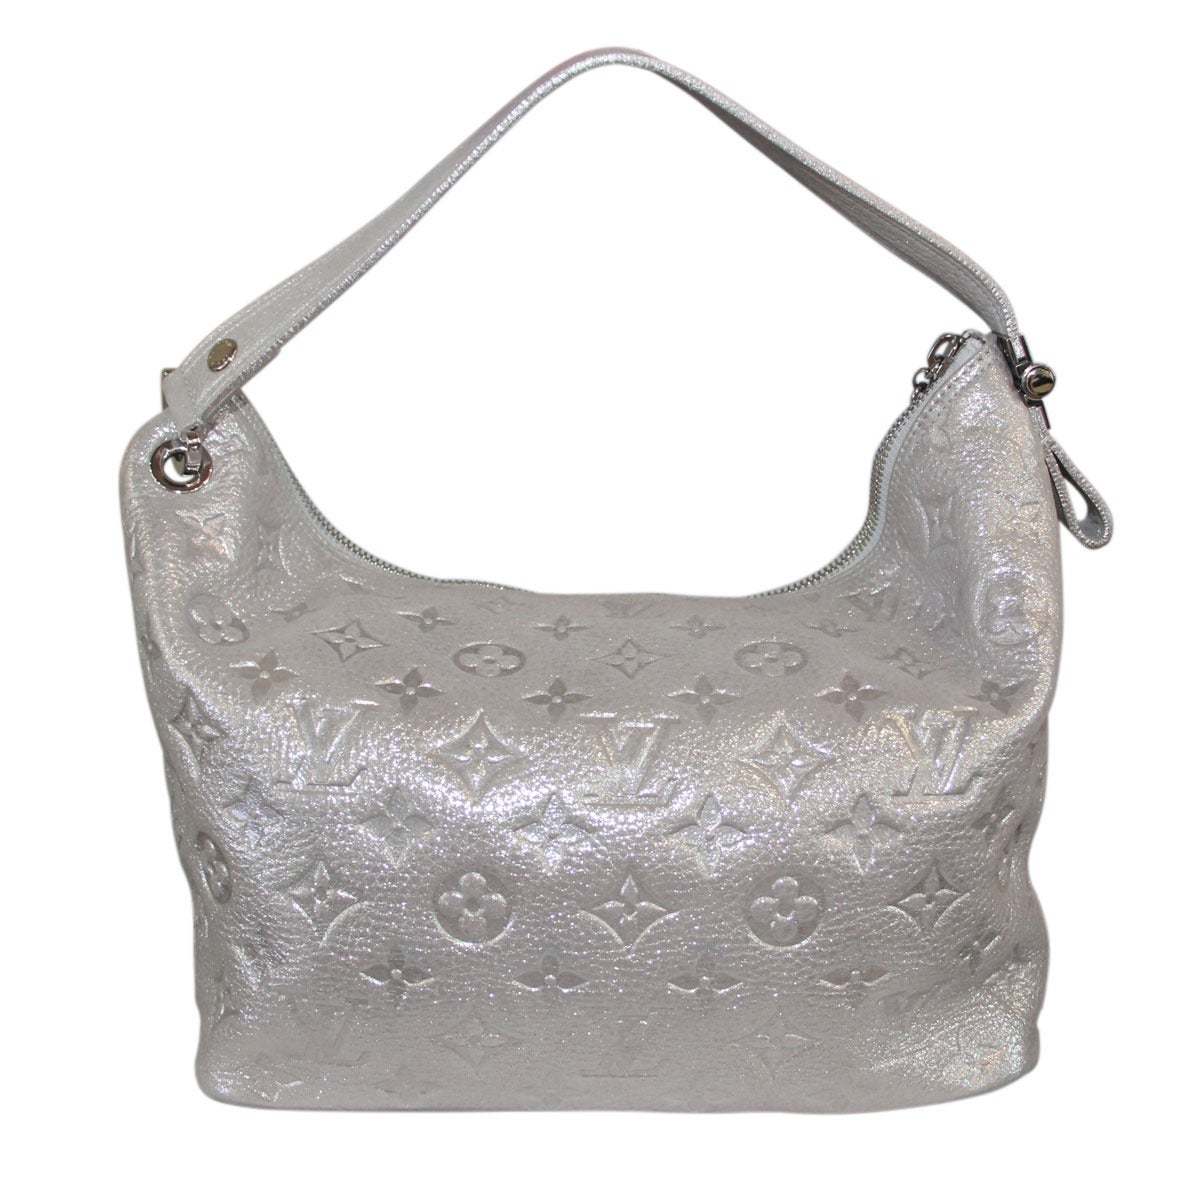 Company: Louis Vuitton
Handles: Silver Soft Leather Shoulder Strap; Drop: 4